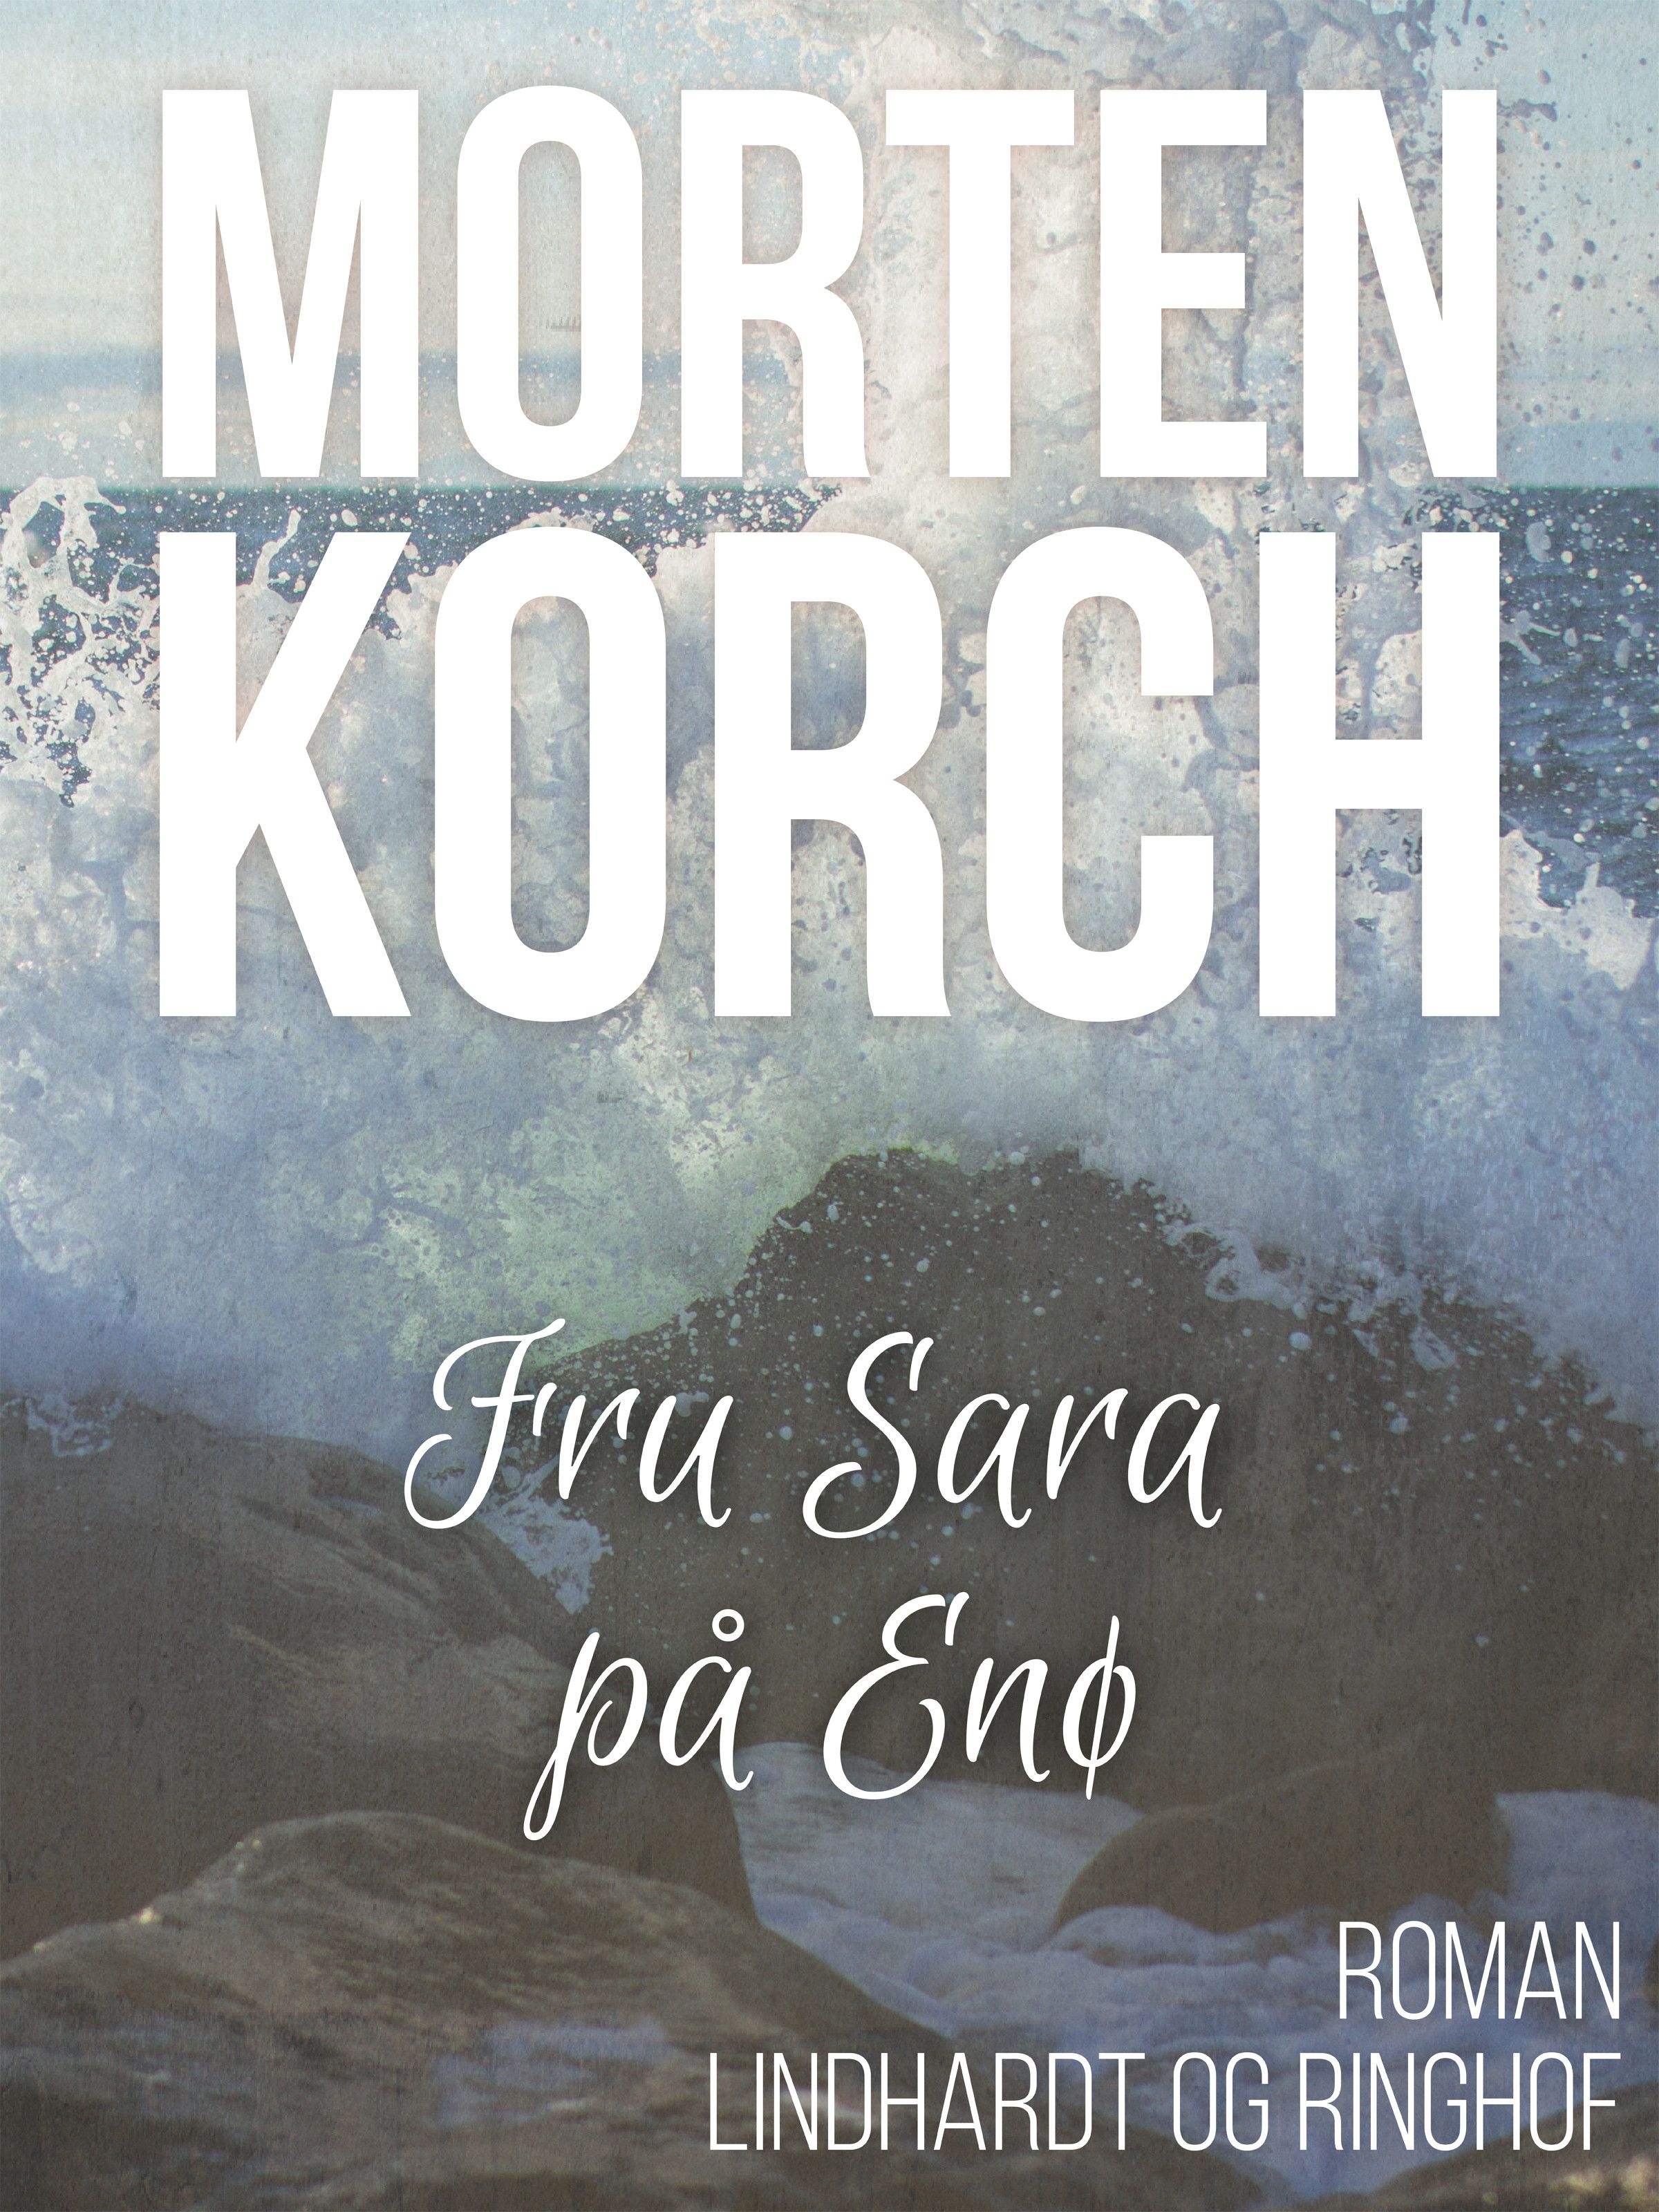 Fru Sara på Enø, ljudbok av Morten Korch